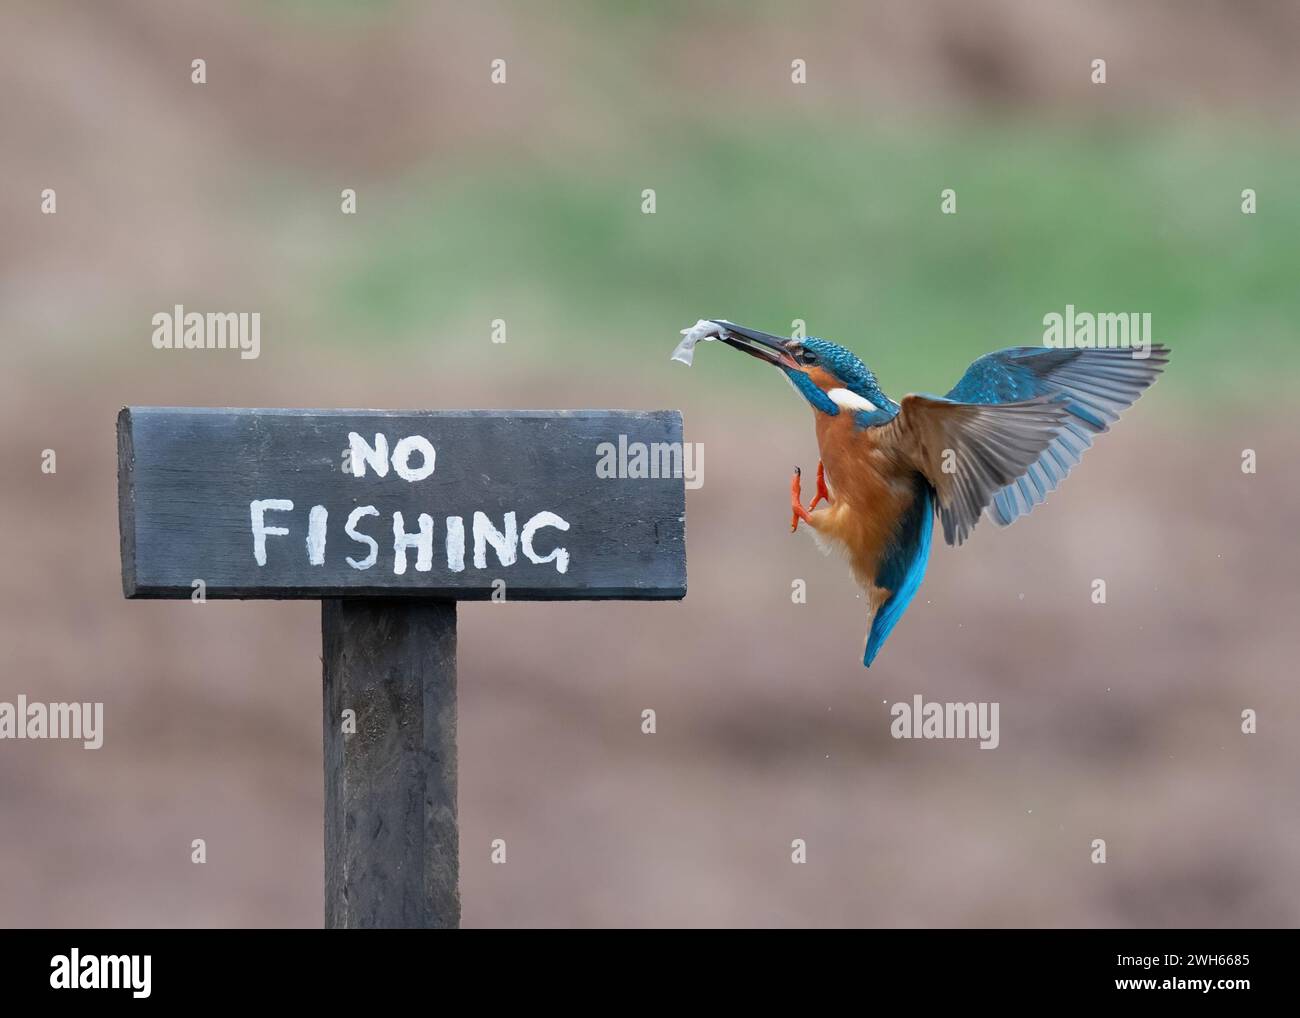 Der König Fishing von einem No Fishing Schild SCHOTTLAND URKOMISCHE BILDER zeigen einen tapferen eisvogel auf einem Schild „No Fishing“ in Schottland mit einem f Stockfoto